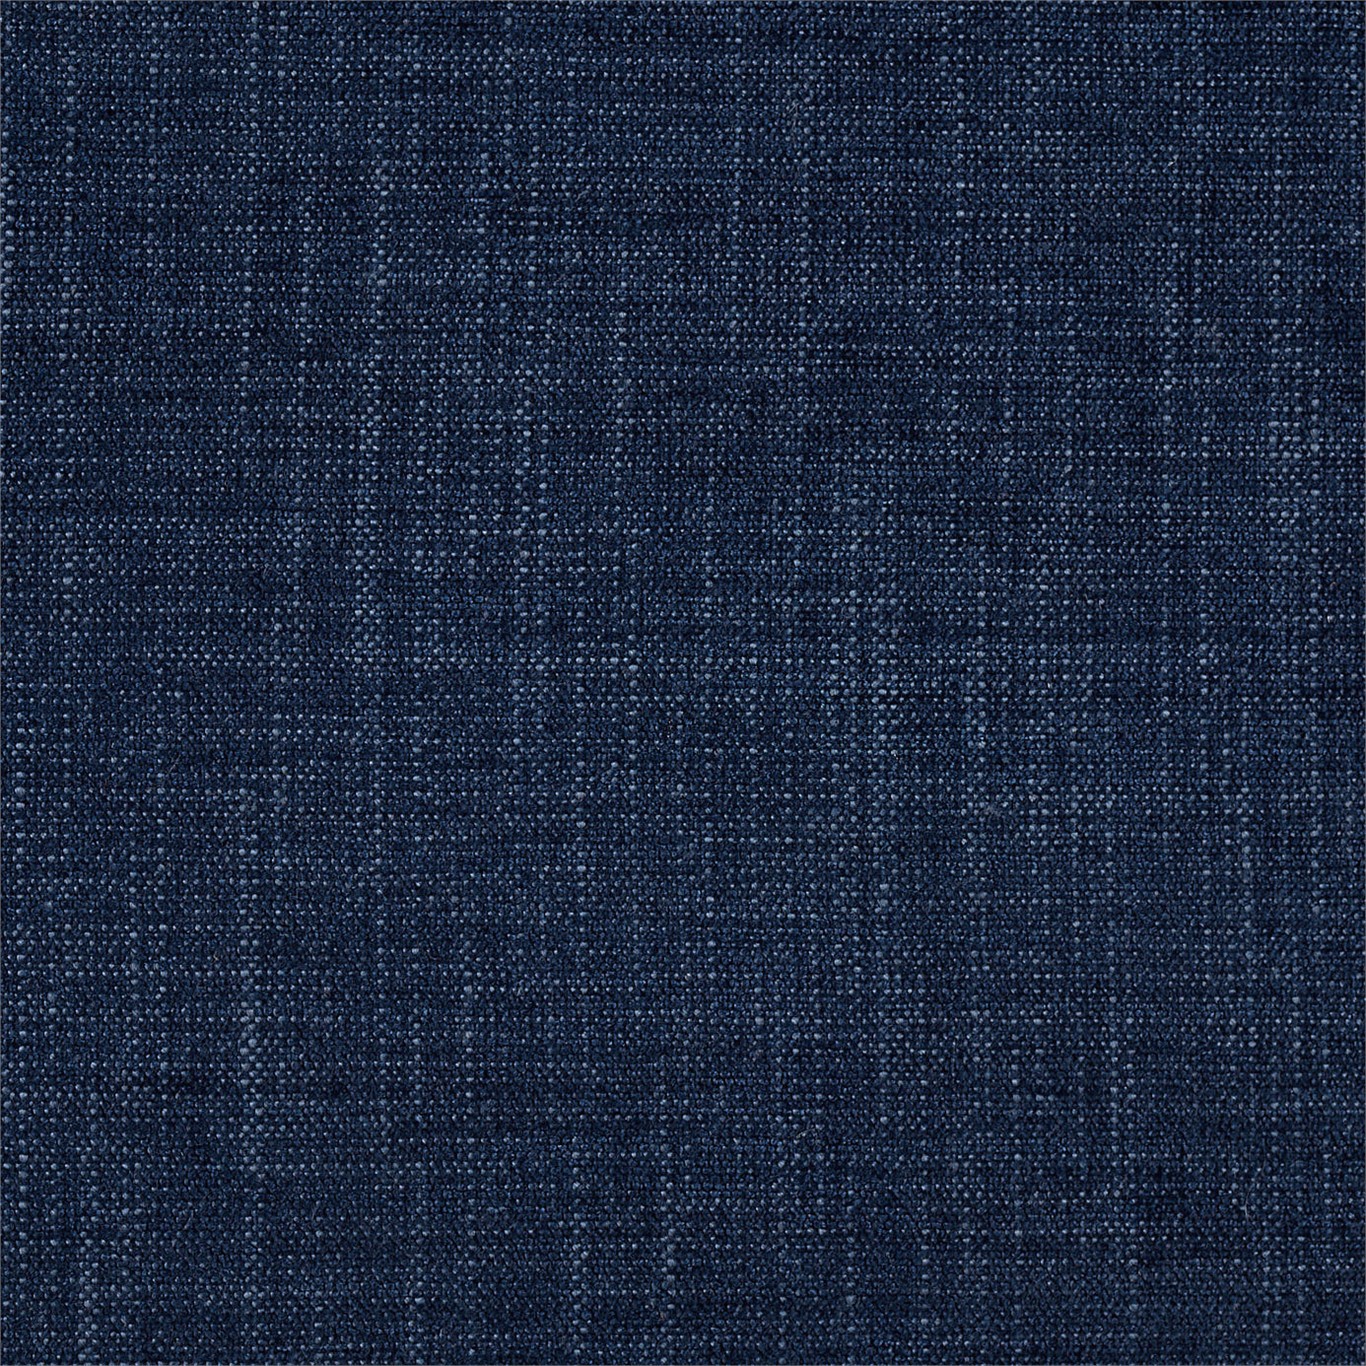 Saroma Plains Denim Fabric by HAR